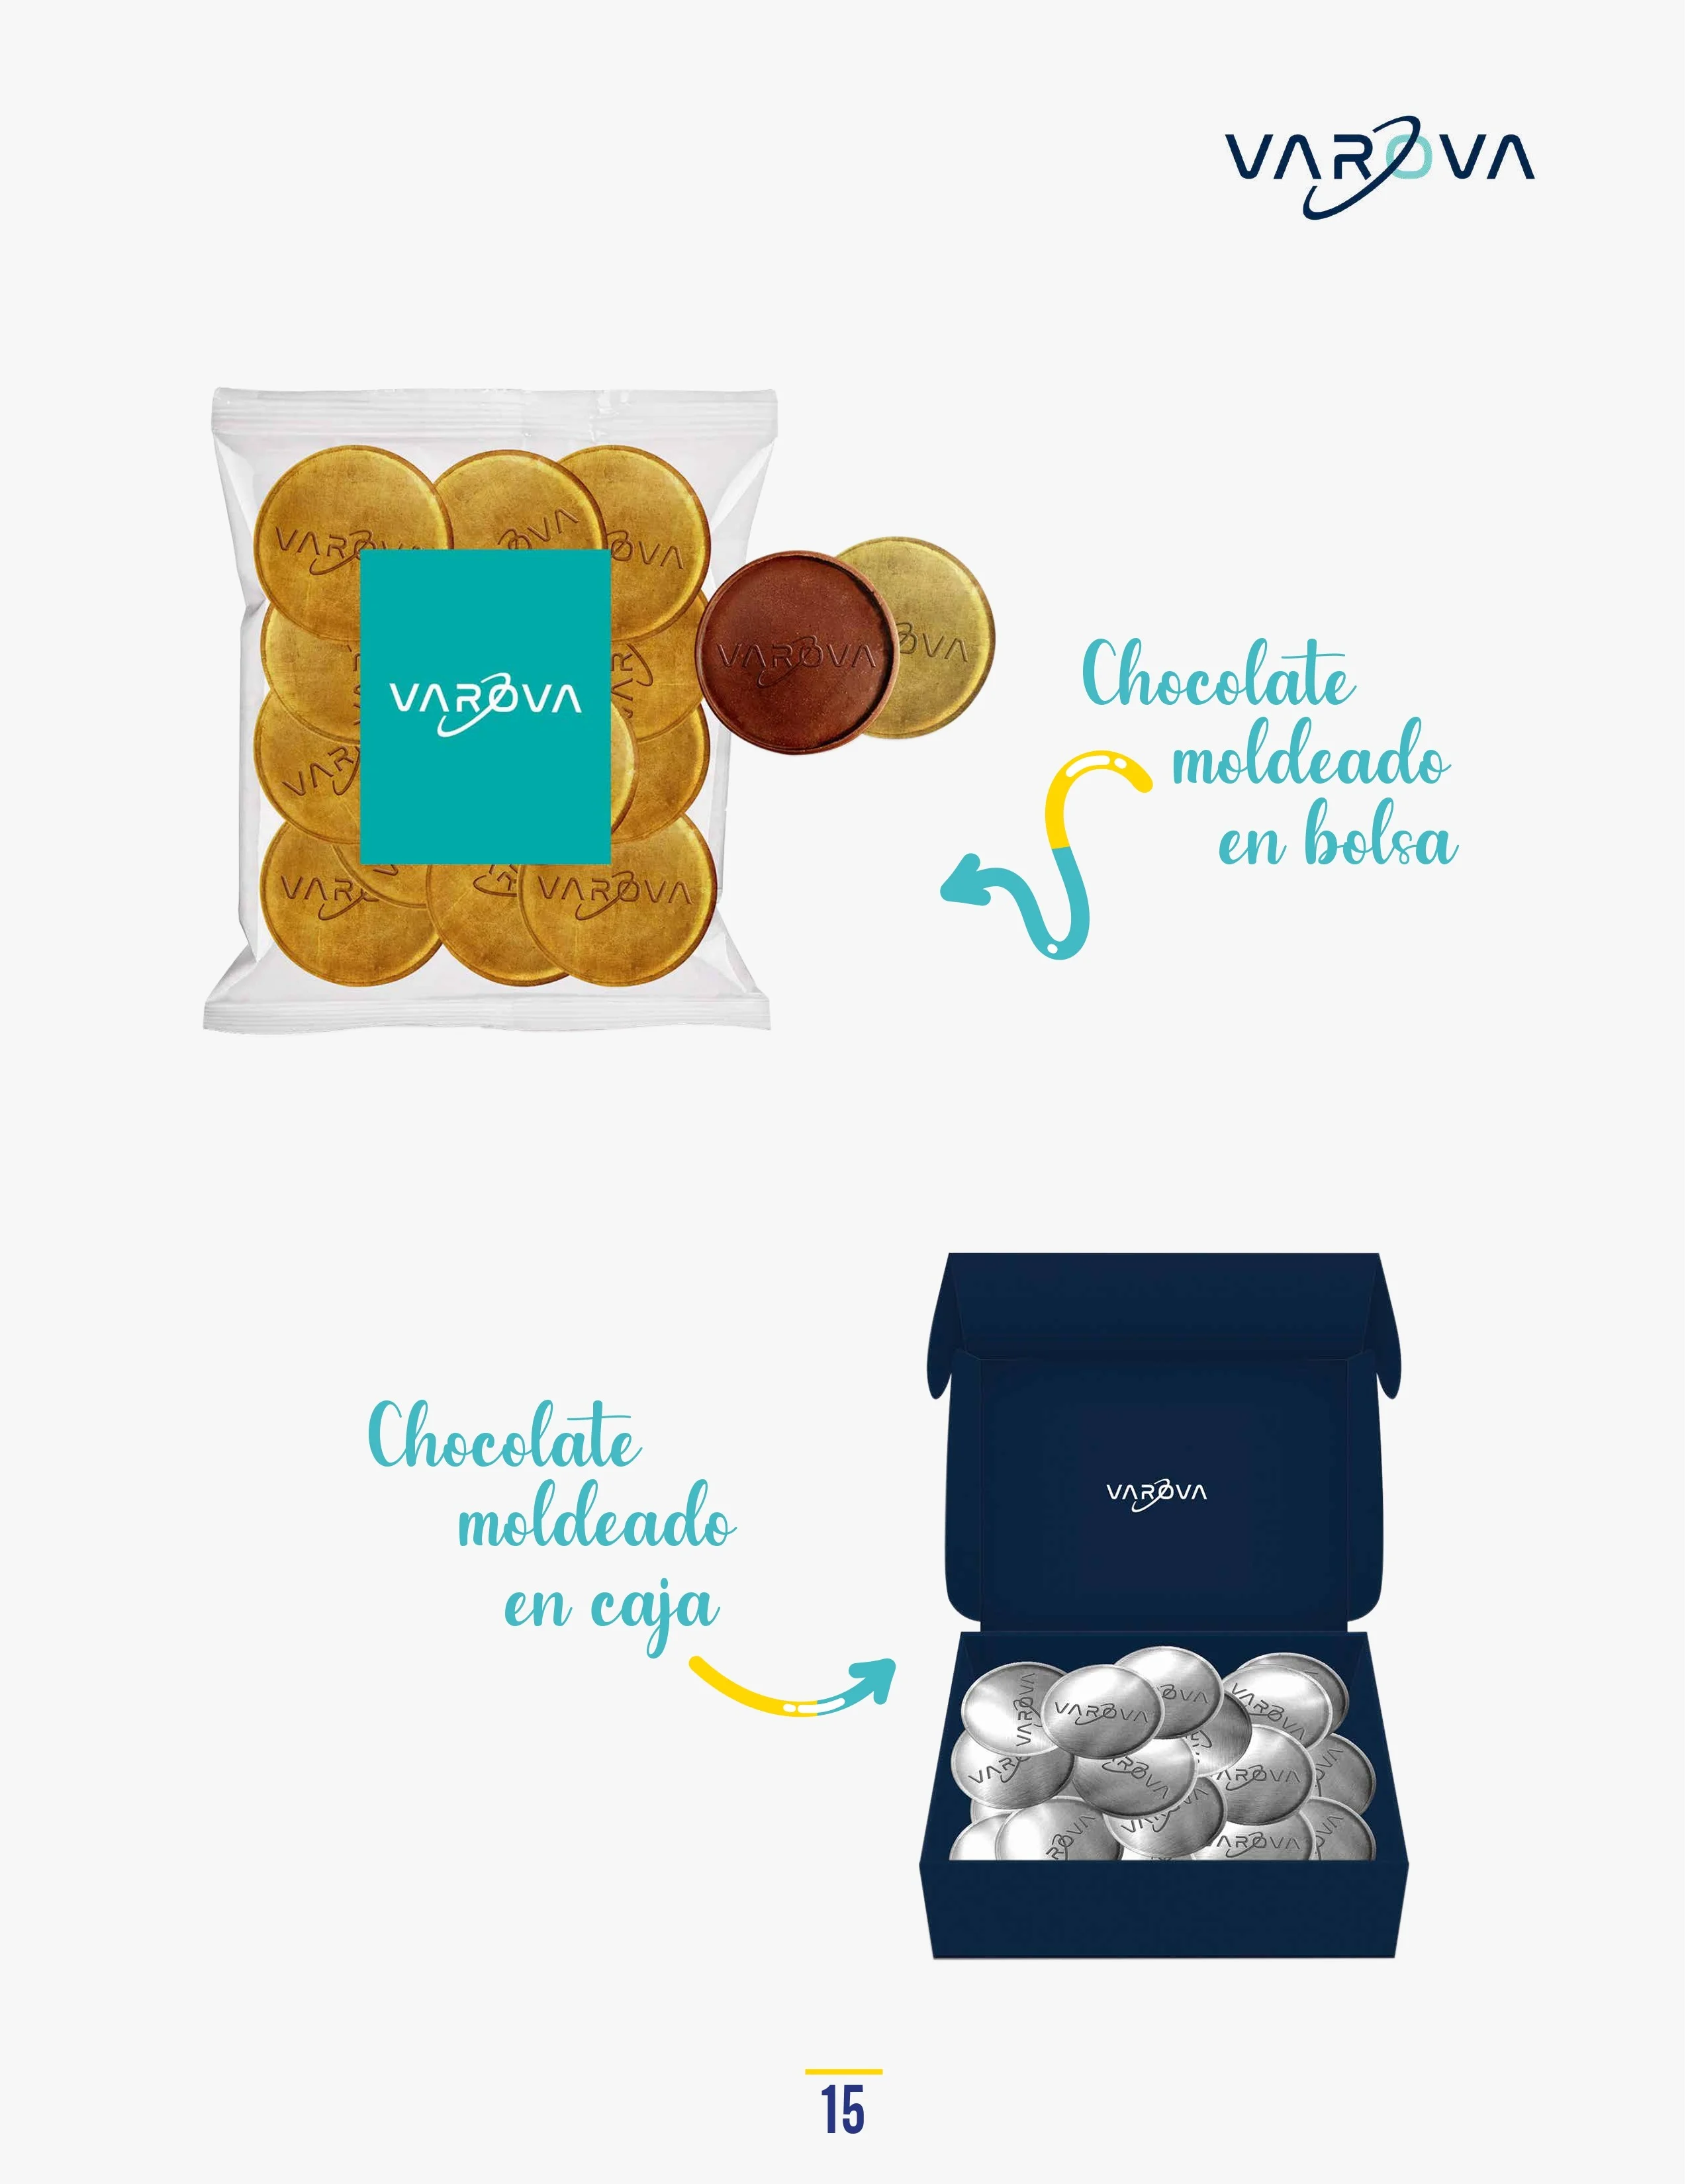 Catálogo de Productos Varova chocolate moldeado en bolsa y en caja personalizados corporativos